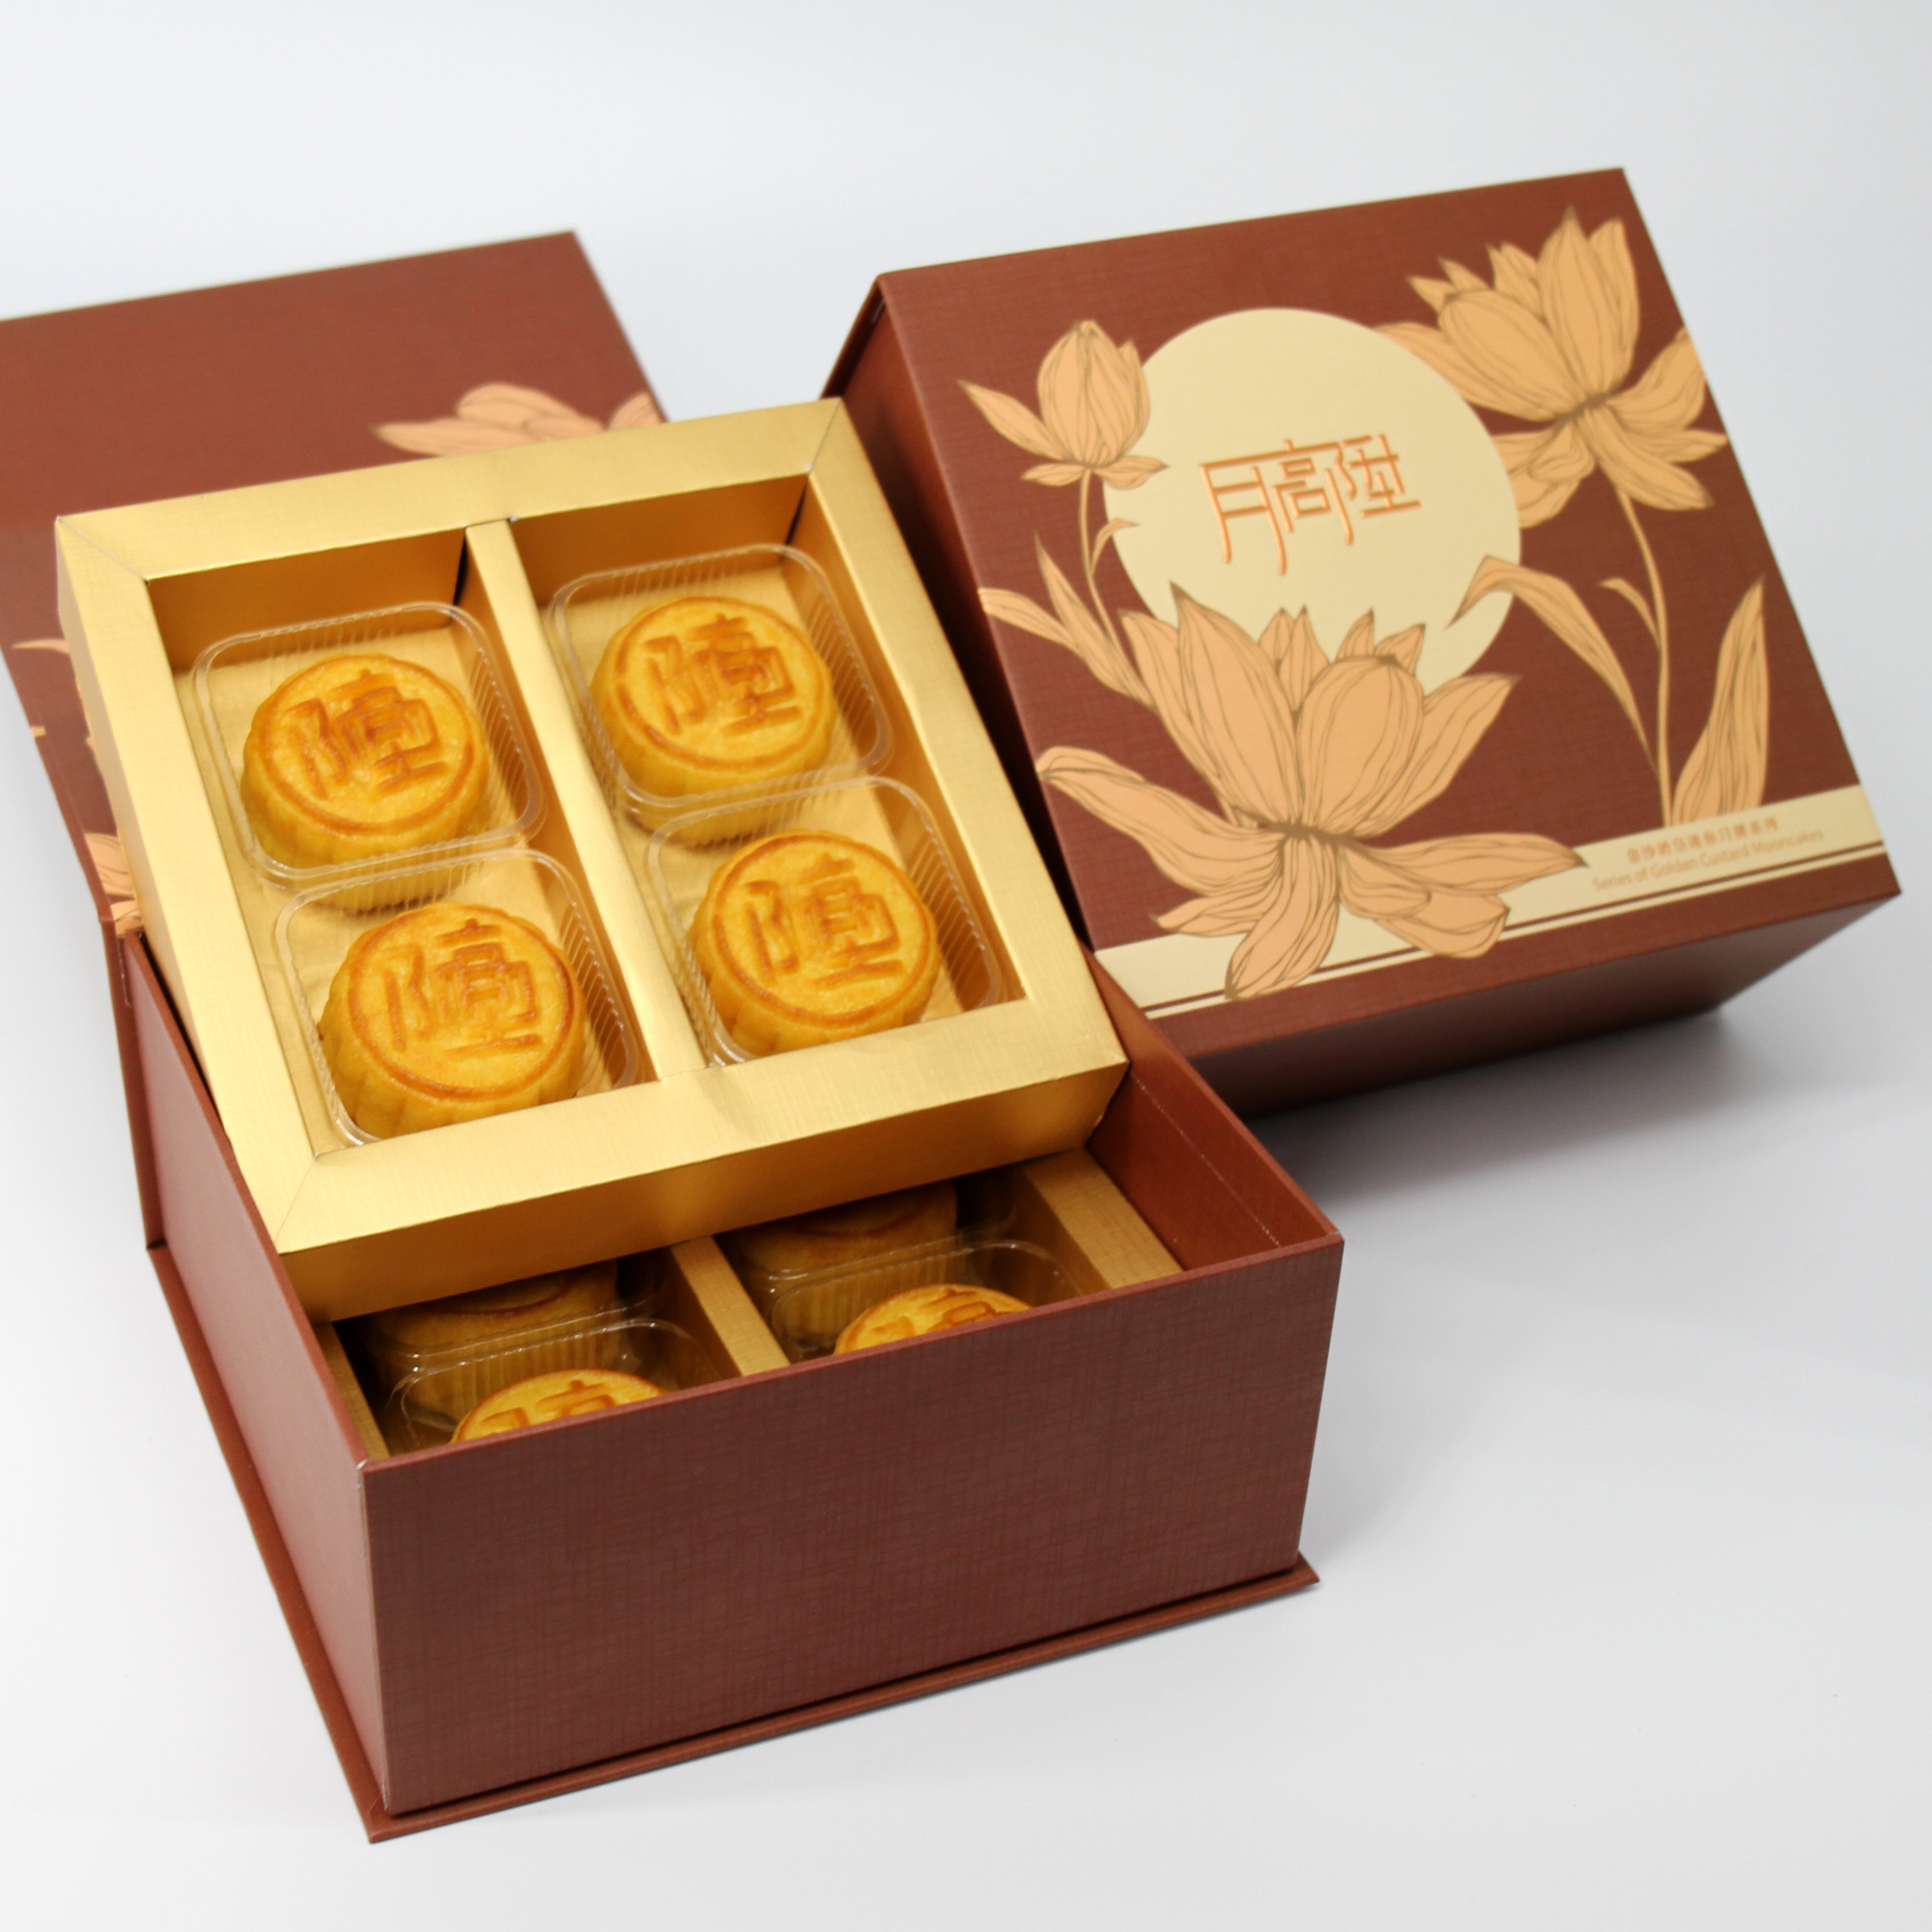 日本稀少糖 - 酥皮金沙奶皇迷你月餅 (八件禮盒裝)